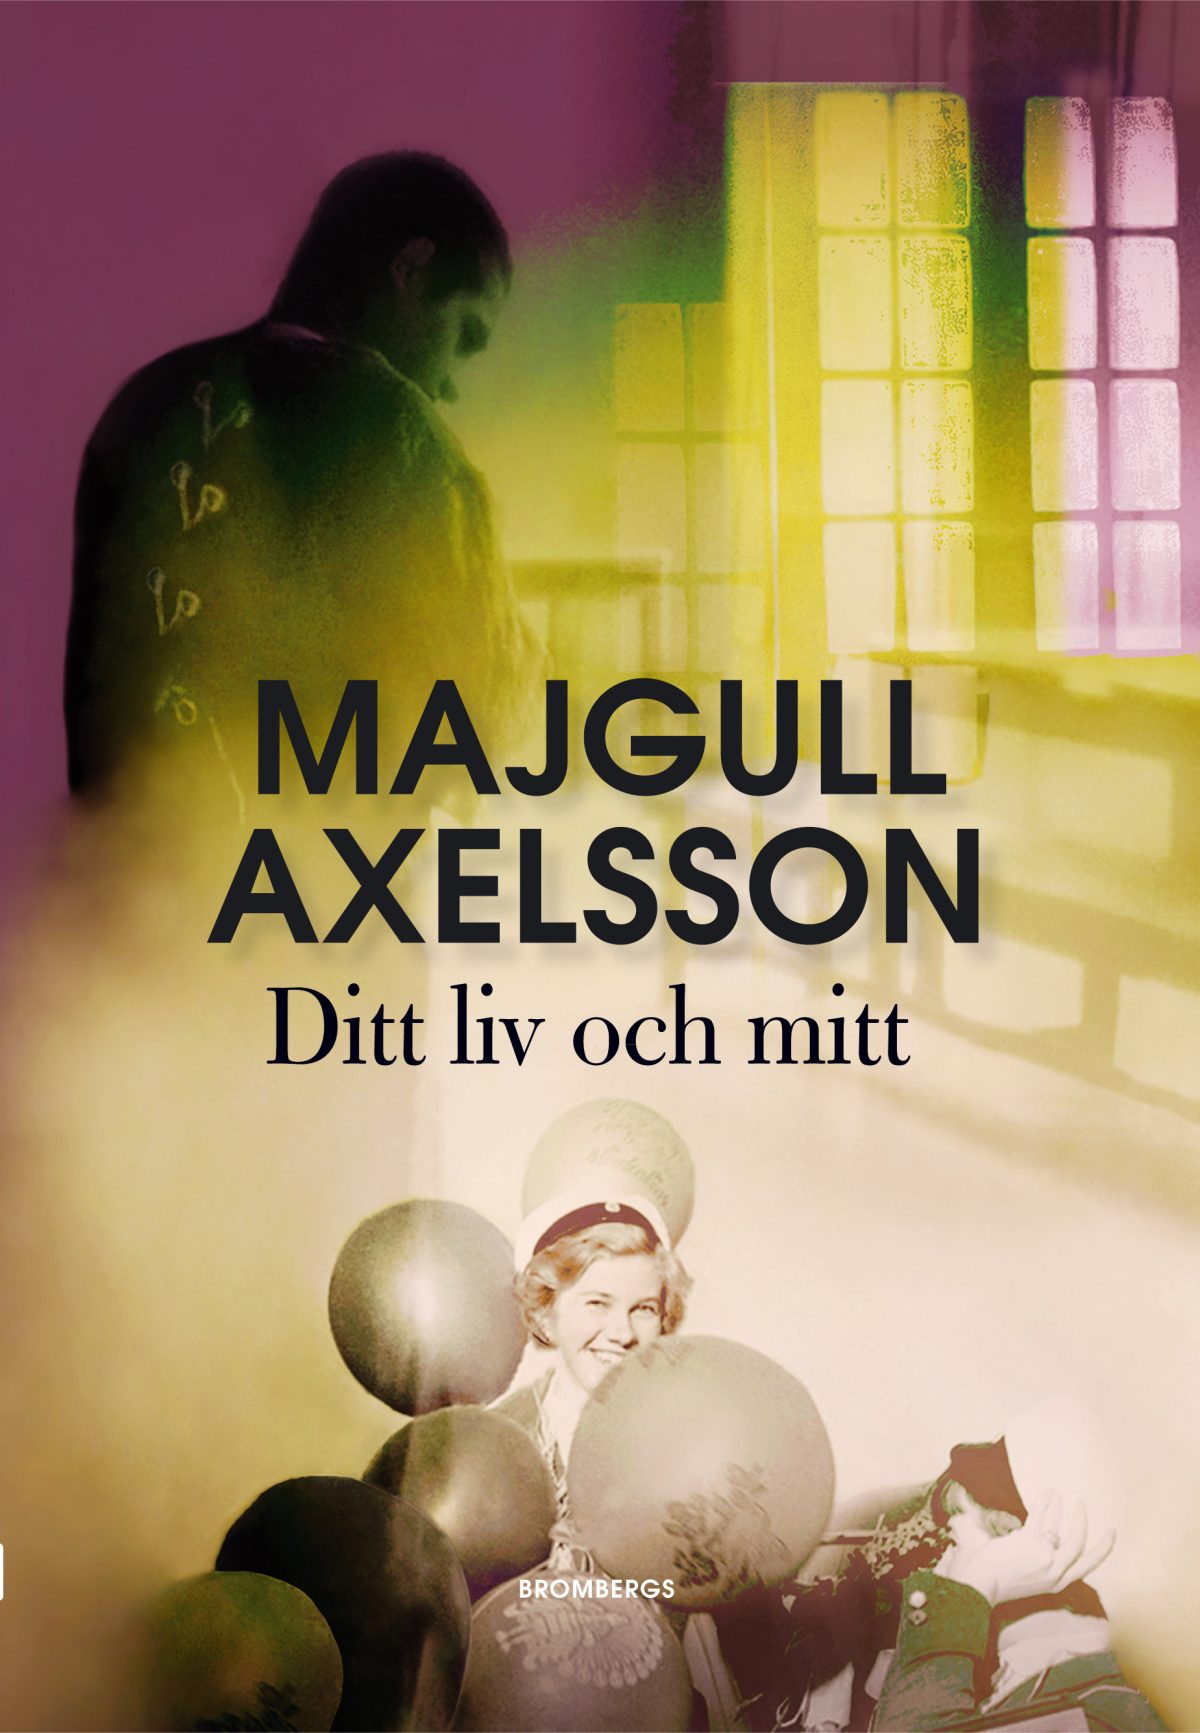 Majgull Axelsson – Ditt liv och mitt. Nyhet på Alvesta Bokhandel!